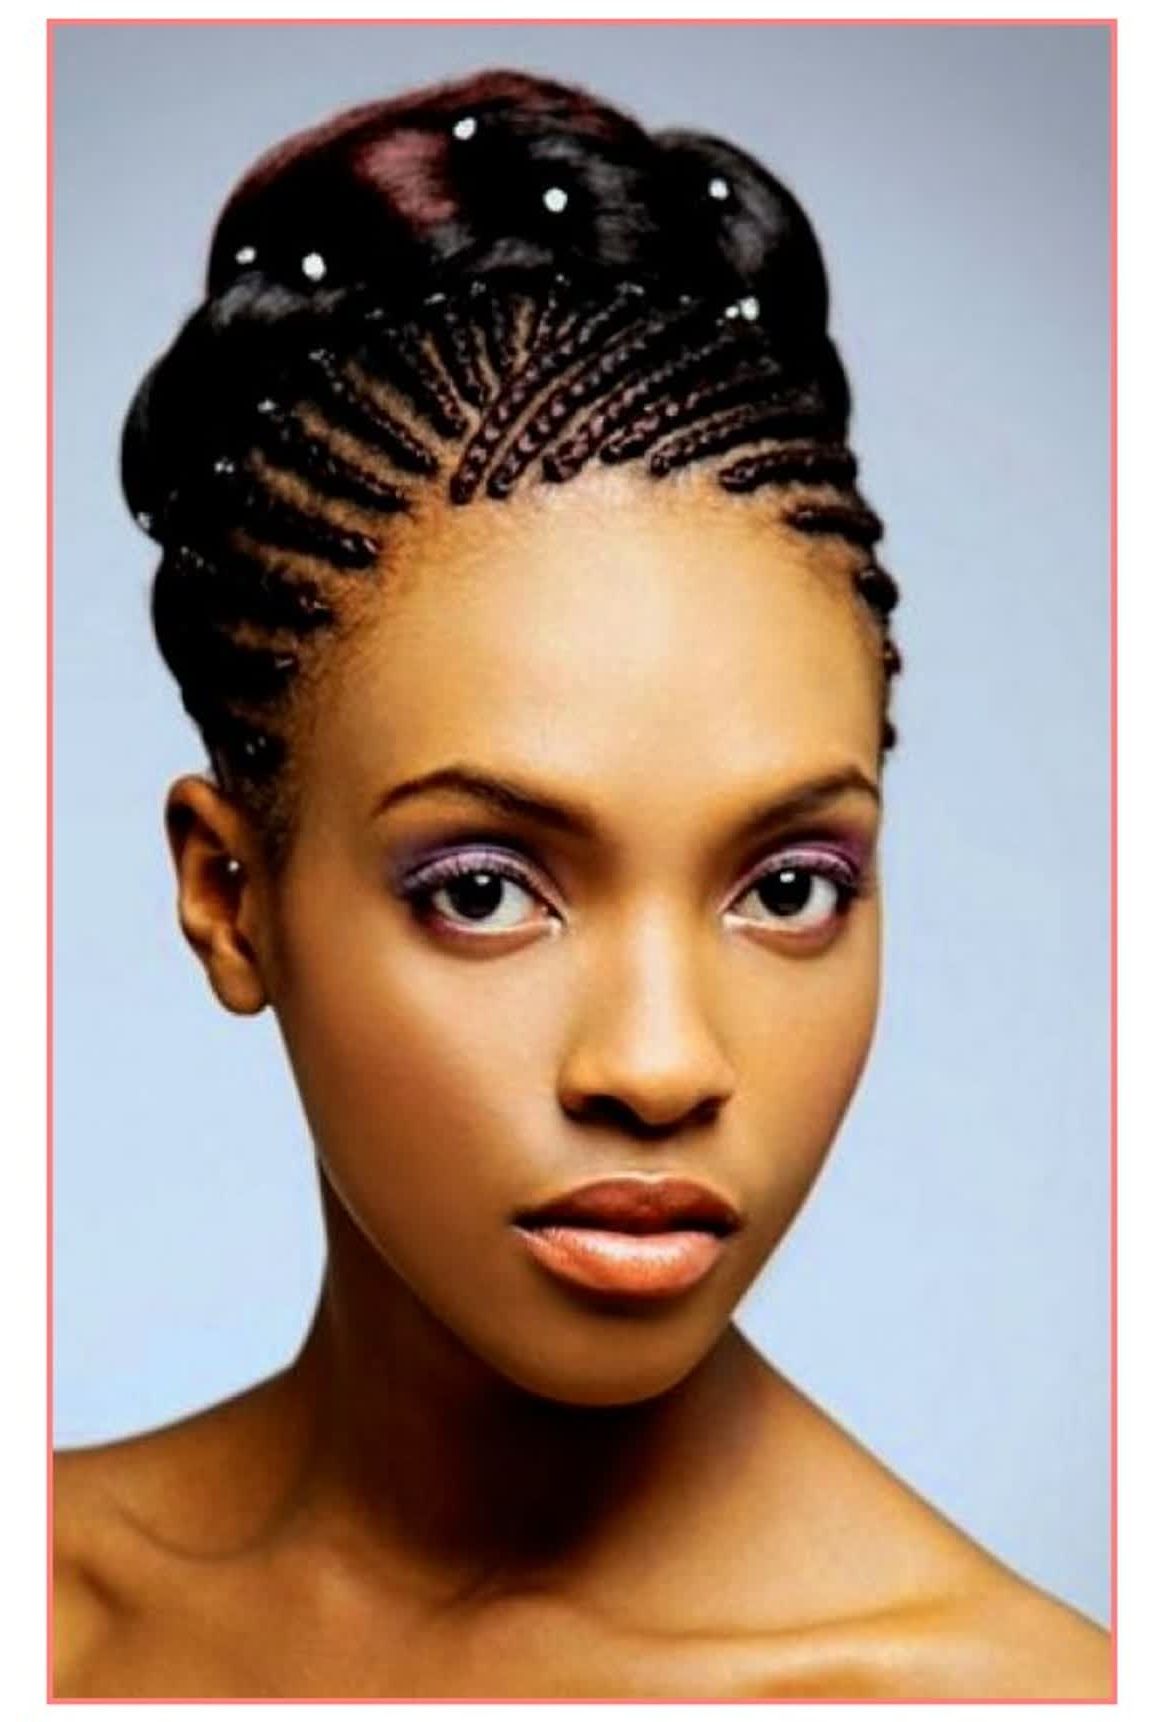 15 Best Ideas African Wedding Hairstyles